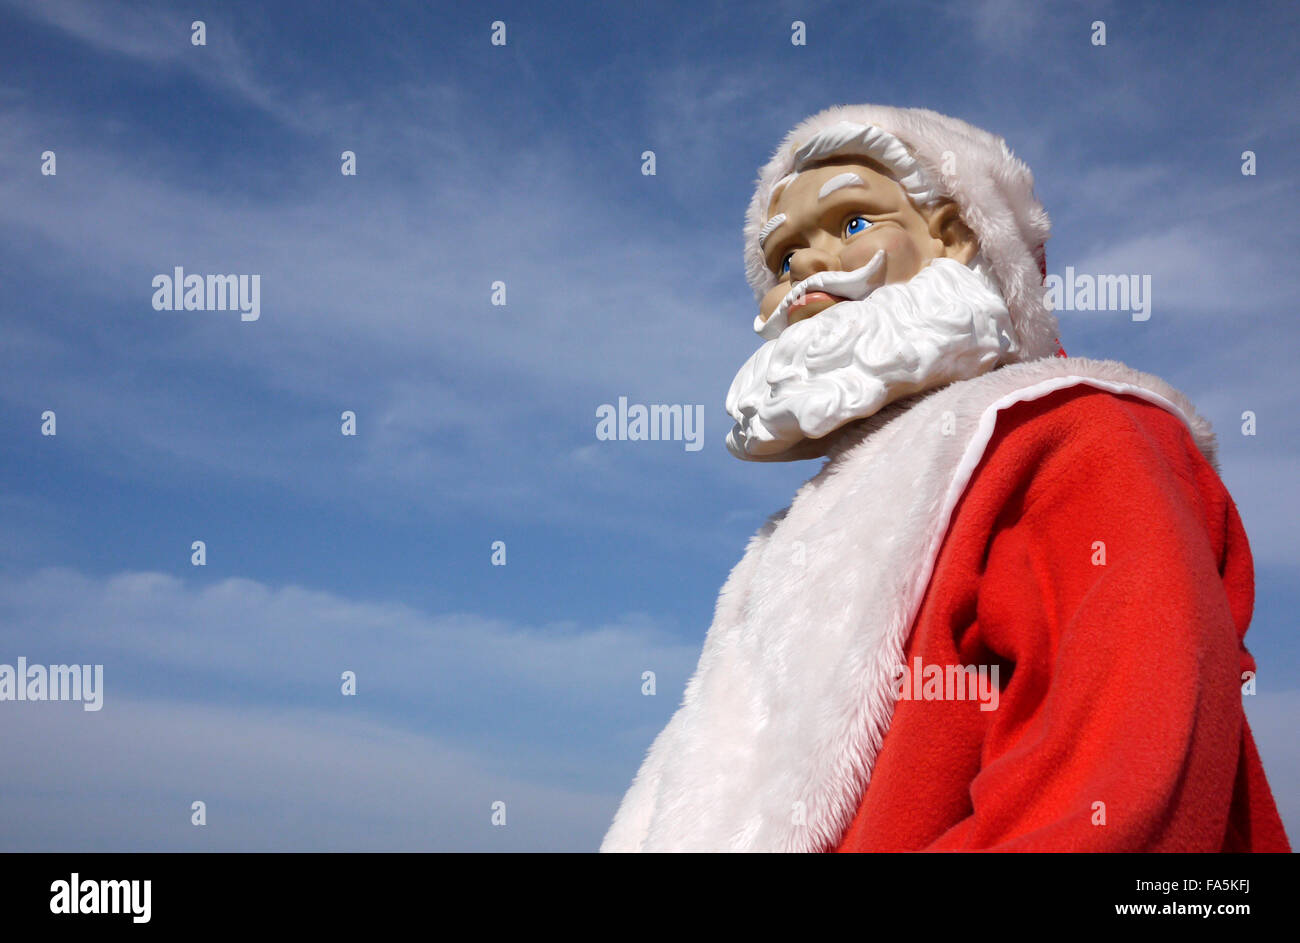 Ein Weihnachtsmann Übungspuppe mit einem Runzelte besorgt besorgt suchen Ausdruck dargestellt, im Freien unter einem blauen Himmel Stockfoto